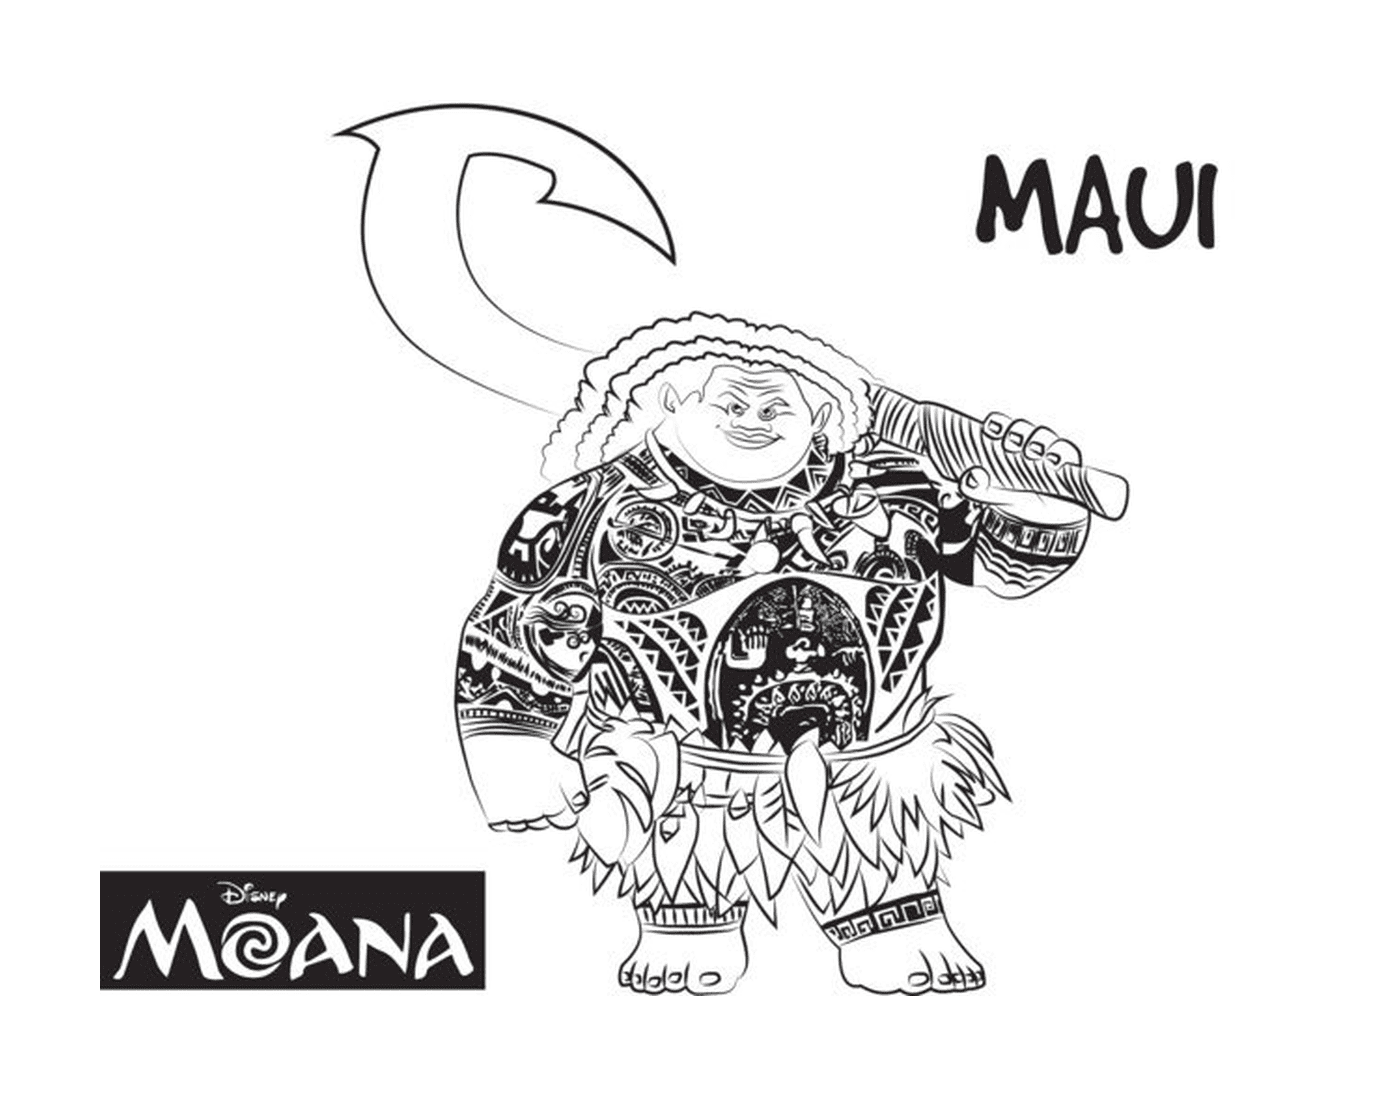  Мауи, сильный человек Моаны 